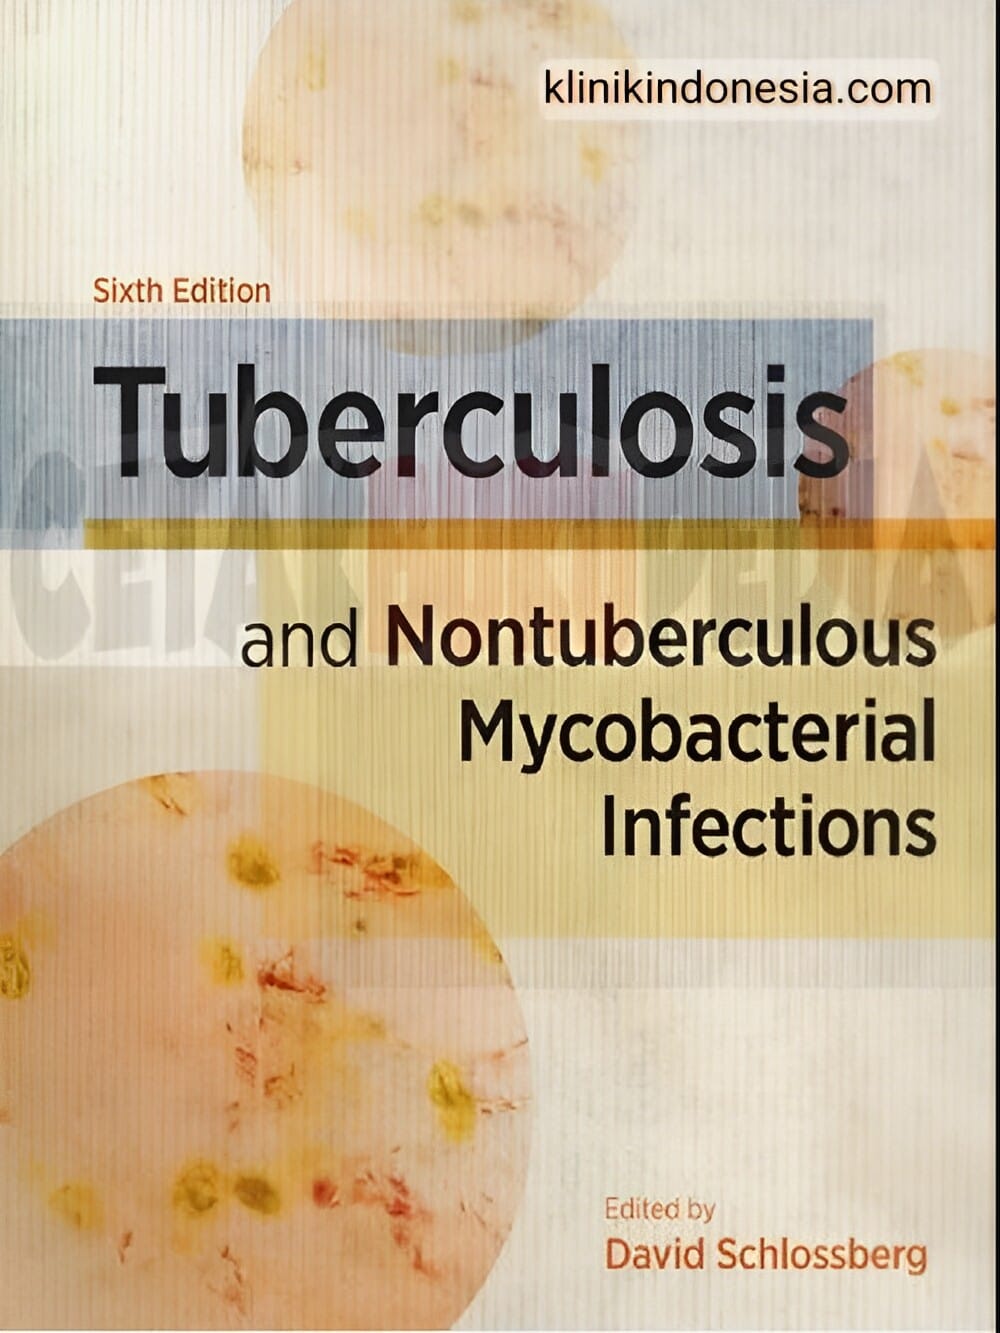 Gambar Tuberculosis and Nontuberculous Mycobacterial Infections